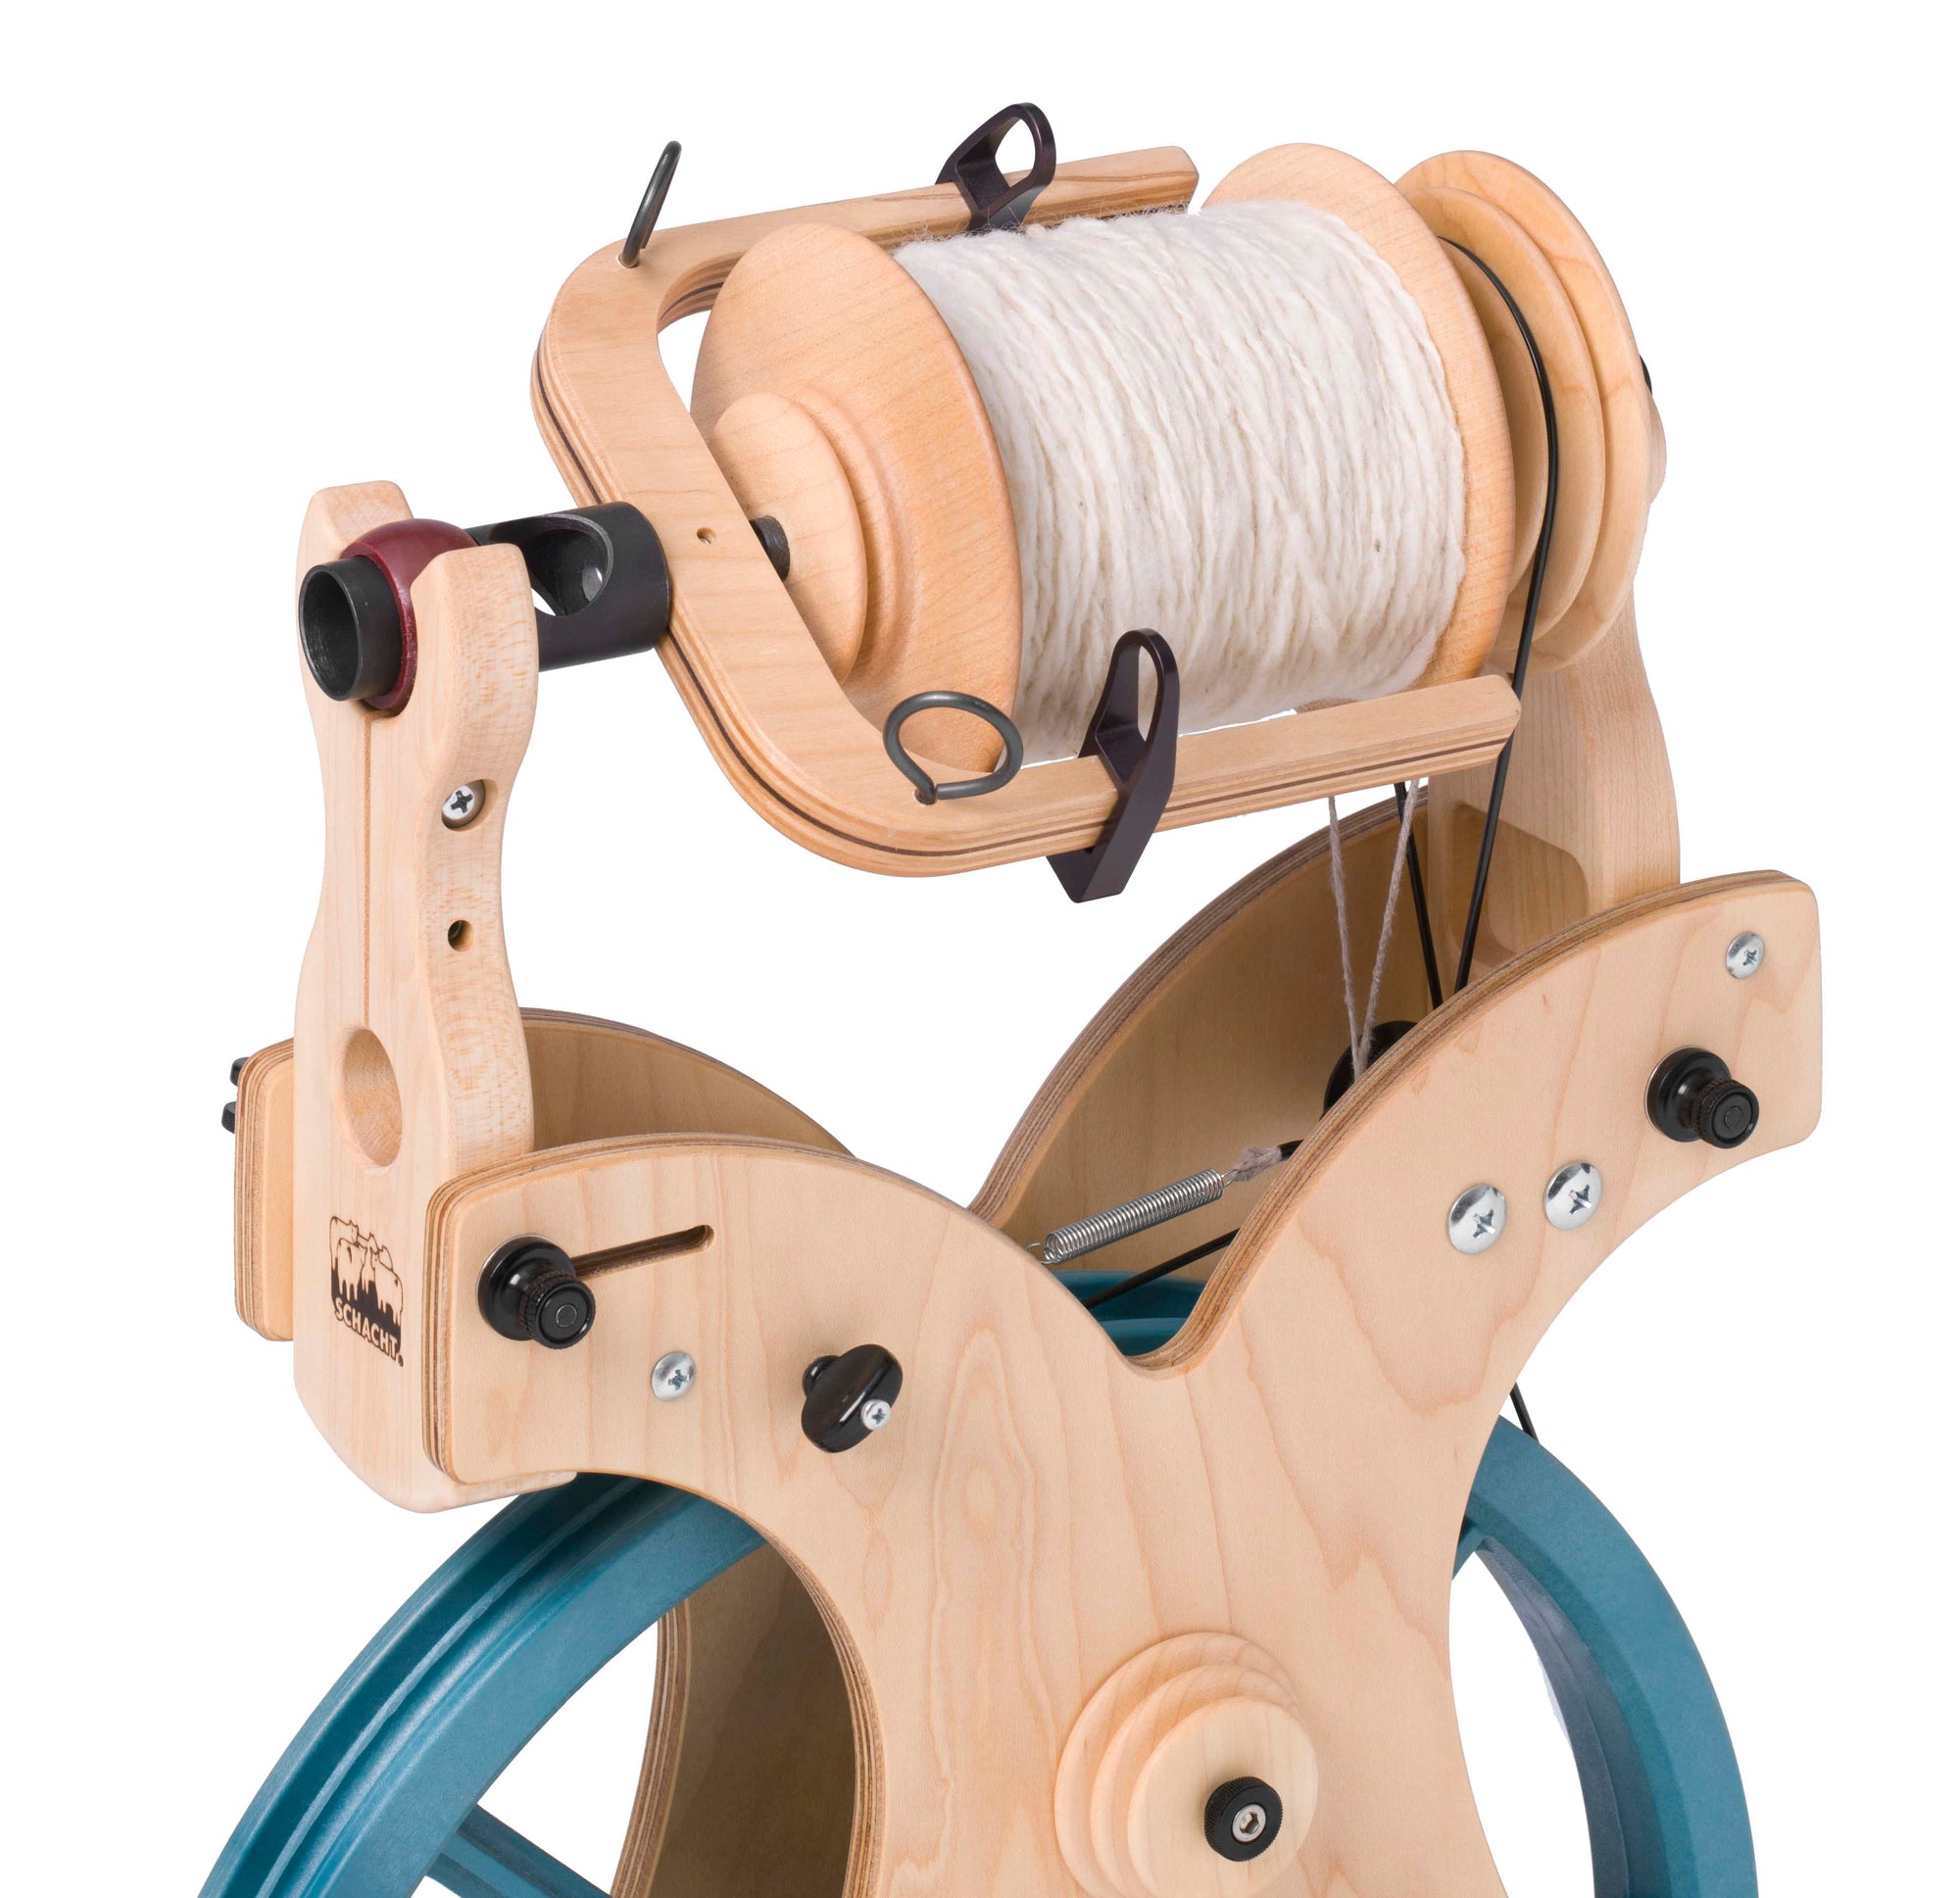 Schacht Sidekick Folding Spinning Wheel - Thread Collective Australia